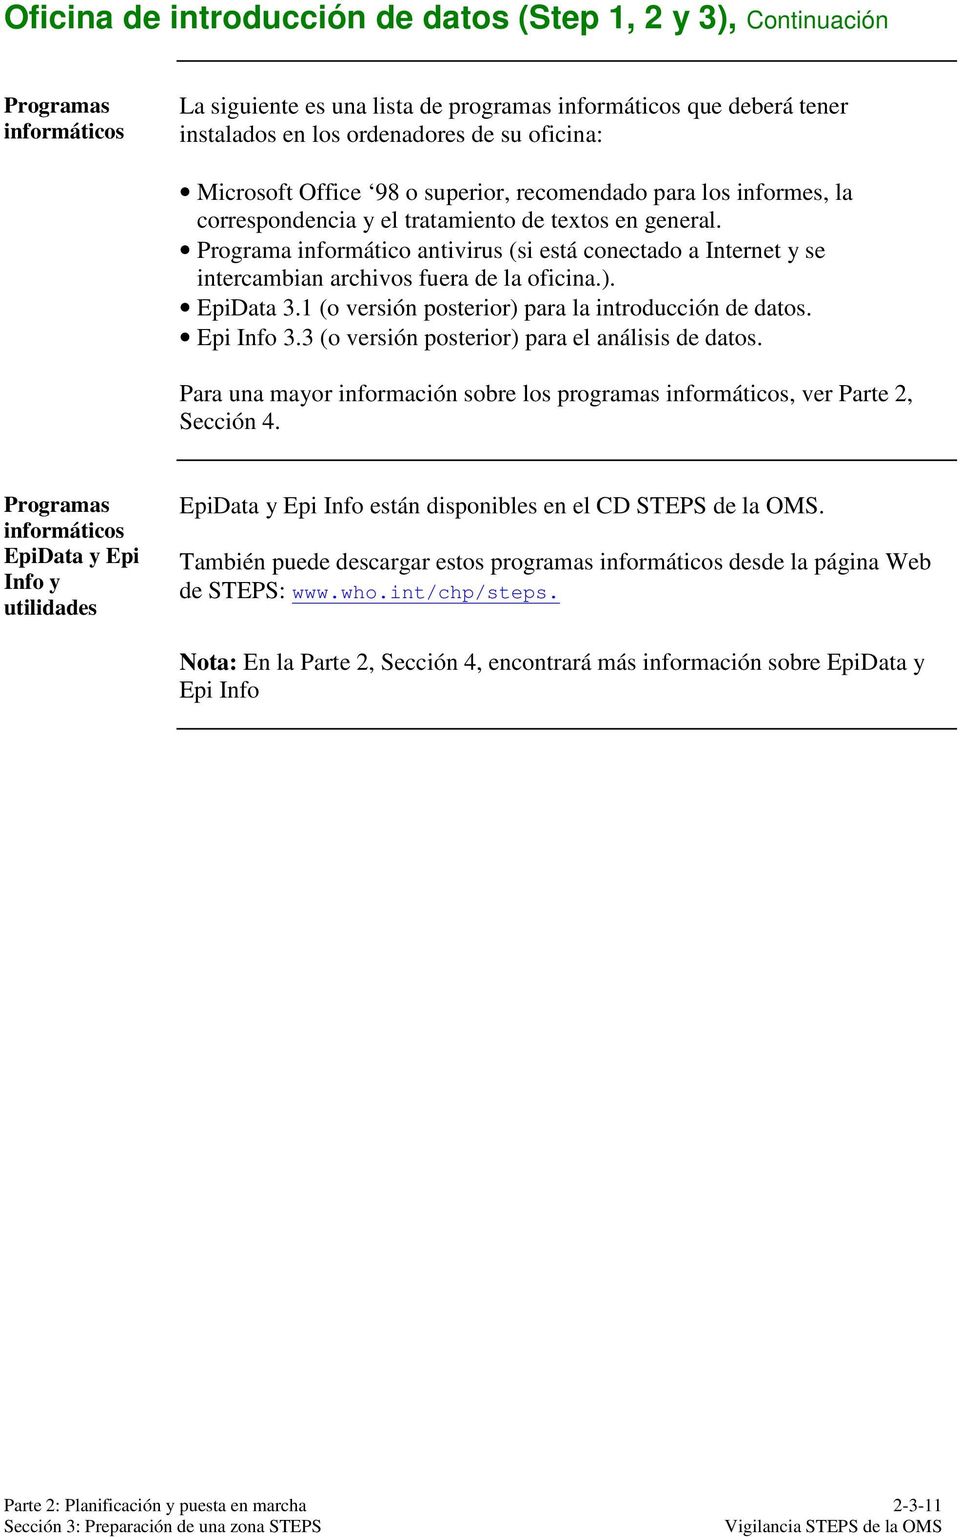 Programa informático antivirus (si está conectado a Internet y se intercambian archivos fuera de la oficina.). EpiData 3.1 (o versión posterior) para la introducción de datos. Epi Info 3.